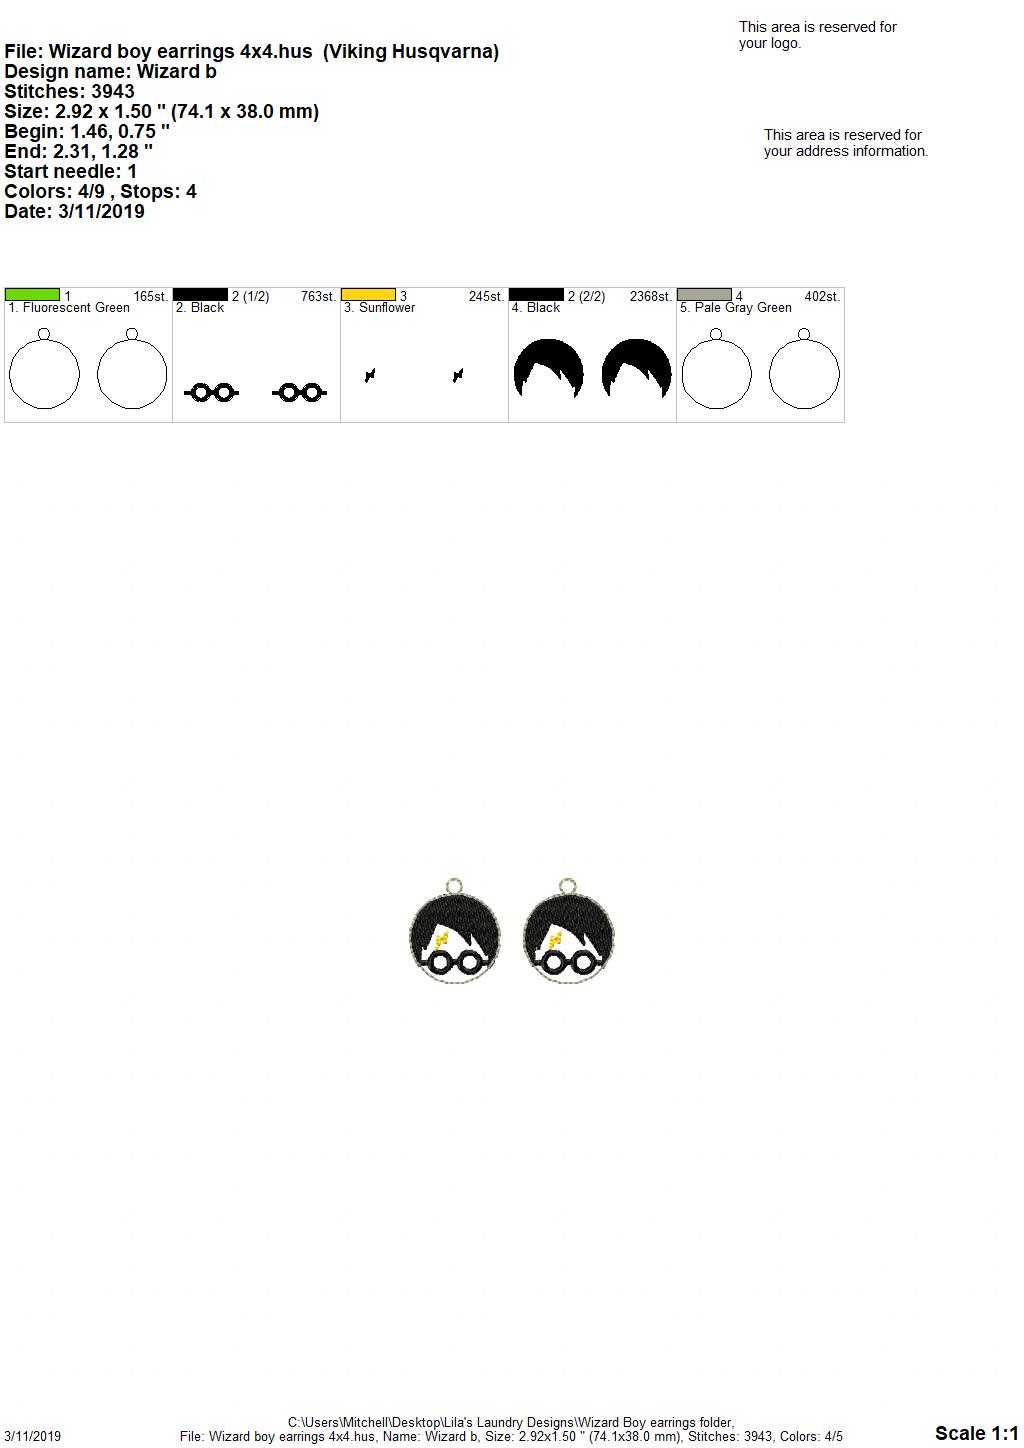 Wizard Boy Earrings - Digital Embroidery Design